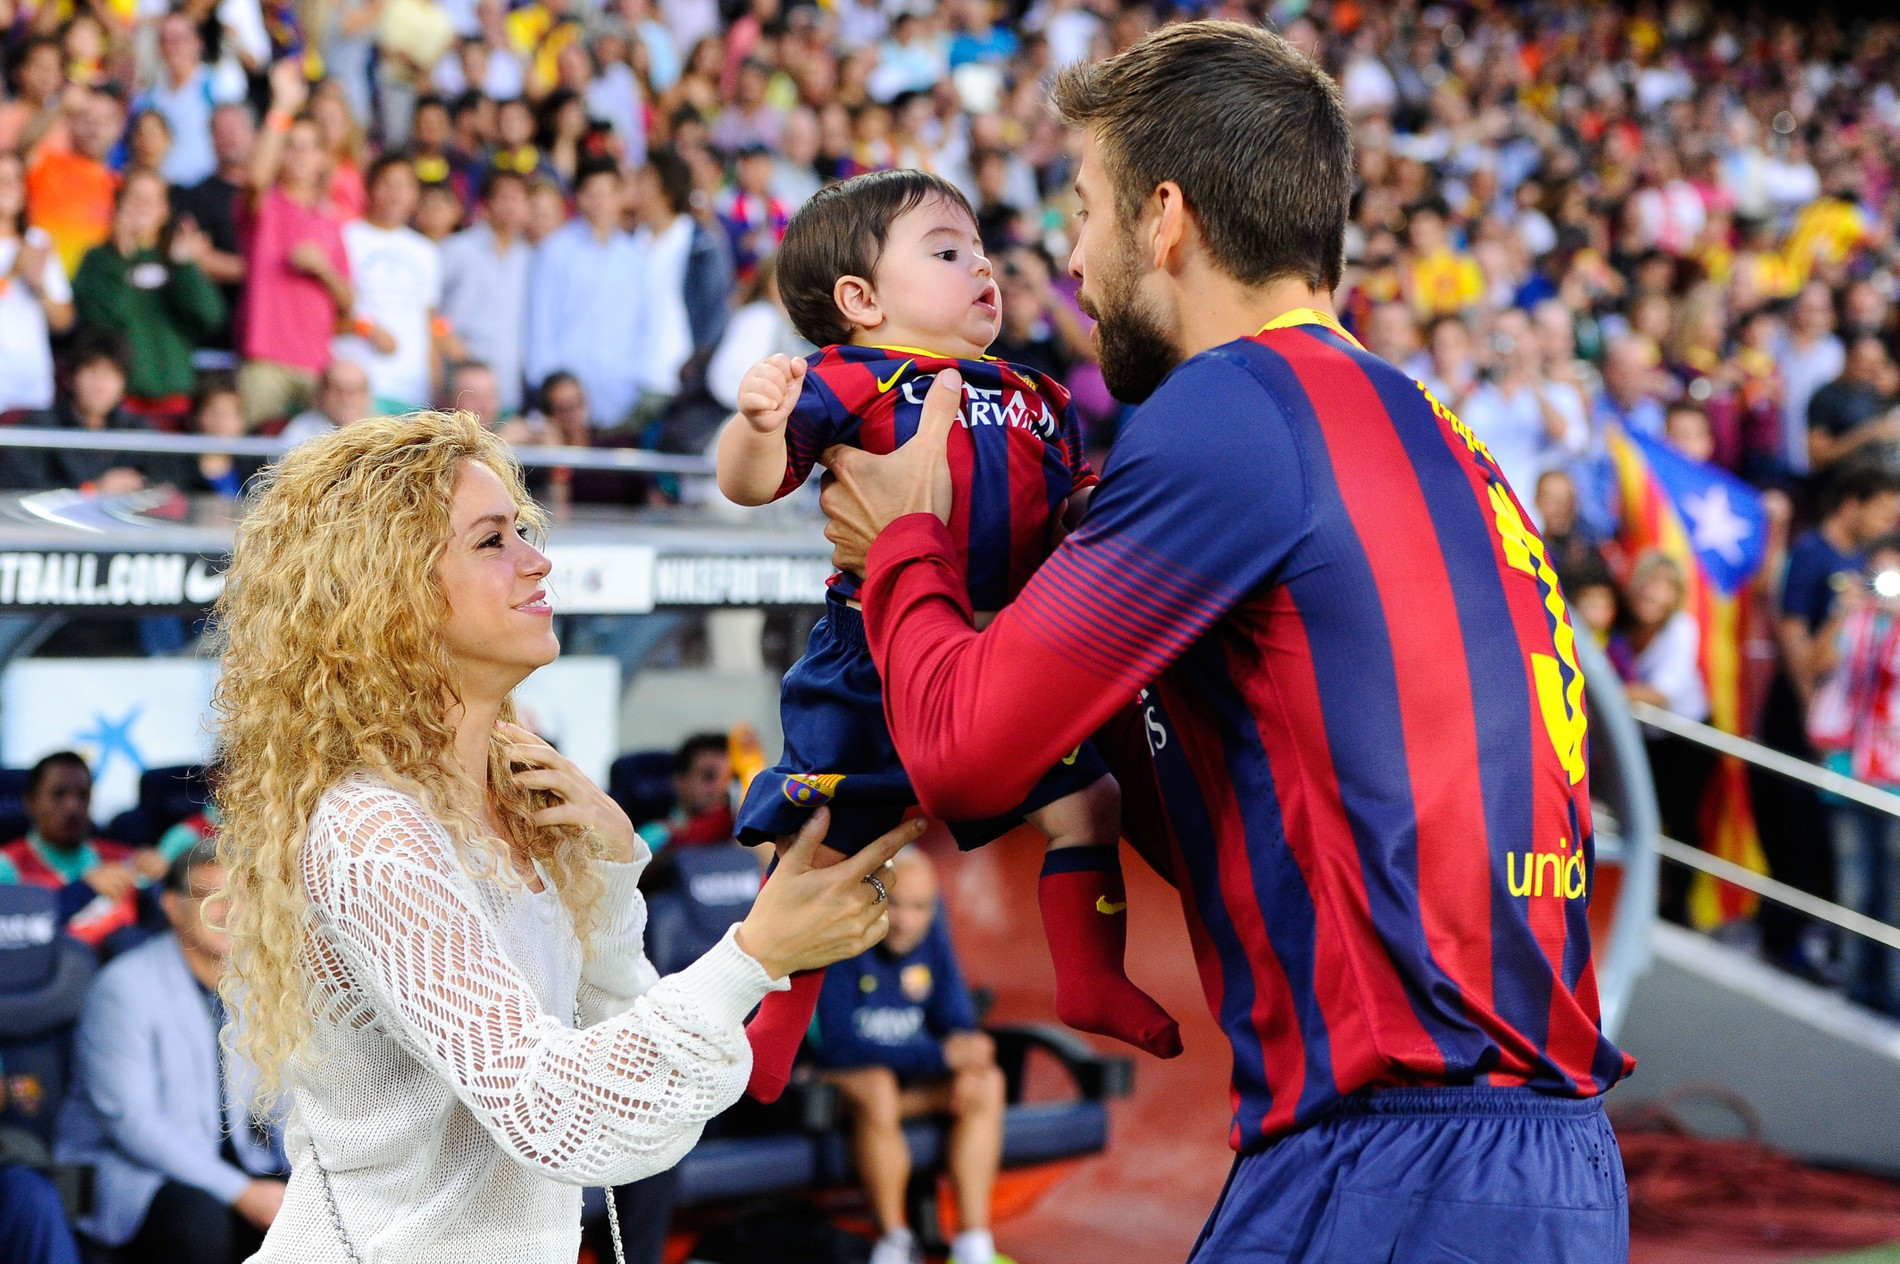 Шакира и Жерар Пике с сыном
Фото: Getty Images